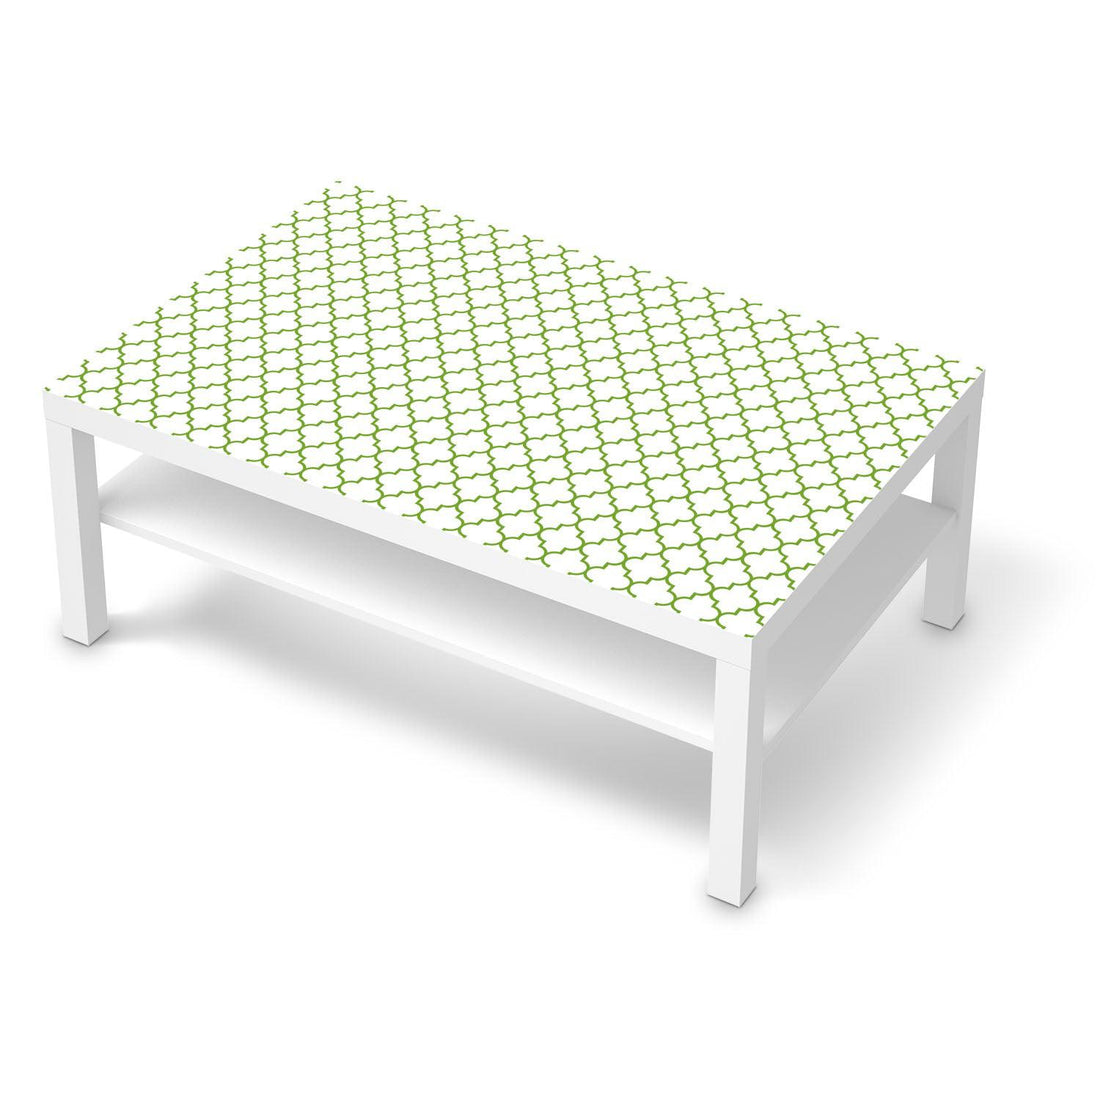 Klebefolie Retro Pattern - Grün - IKEA Lack Tisch 118x78 cm - weiss